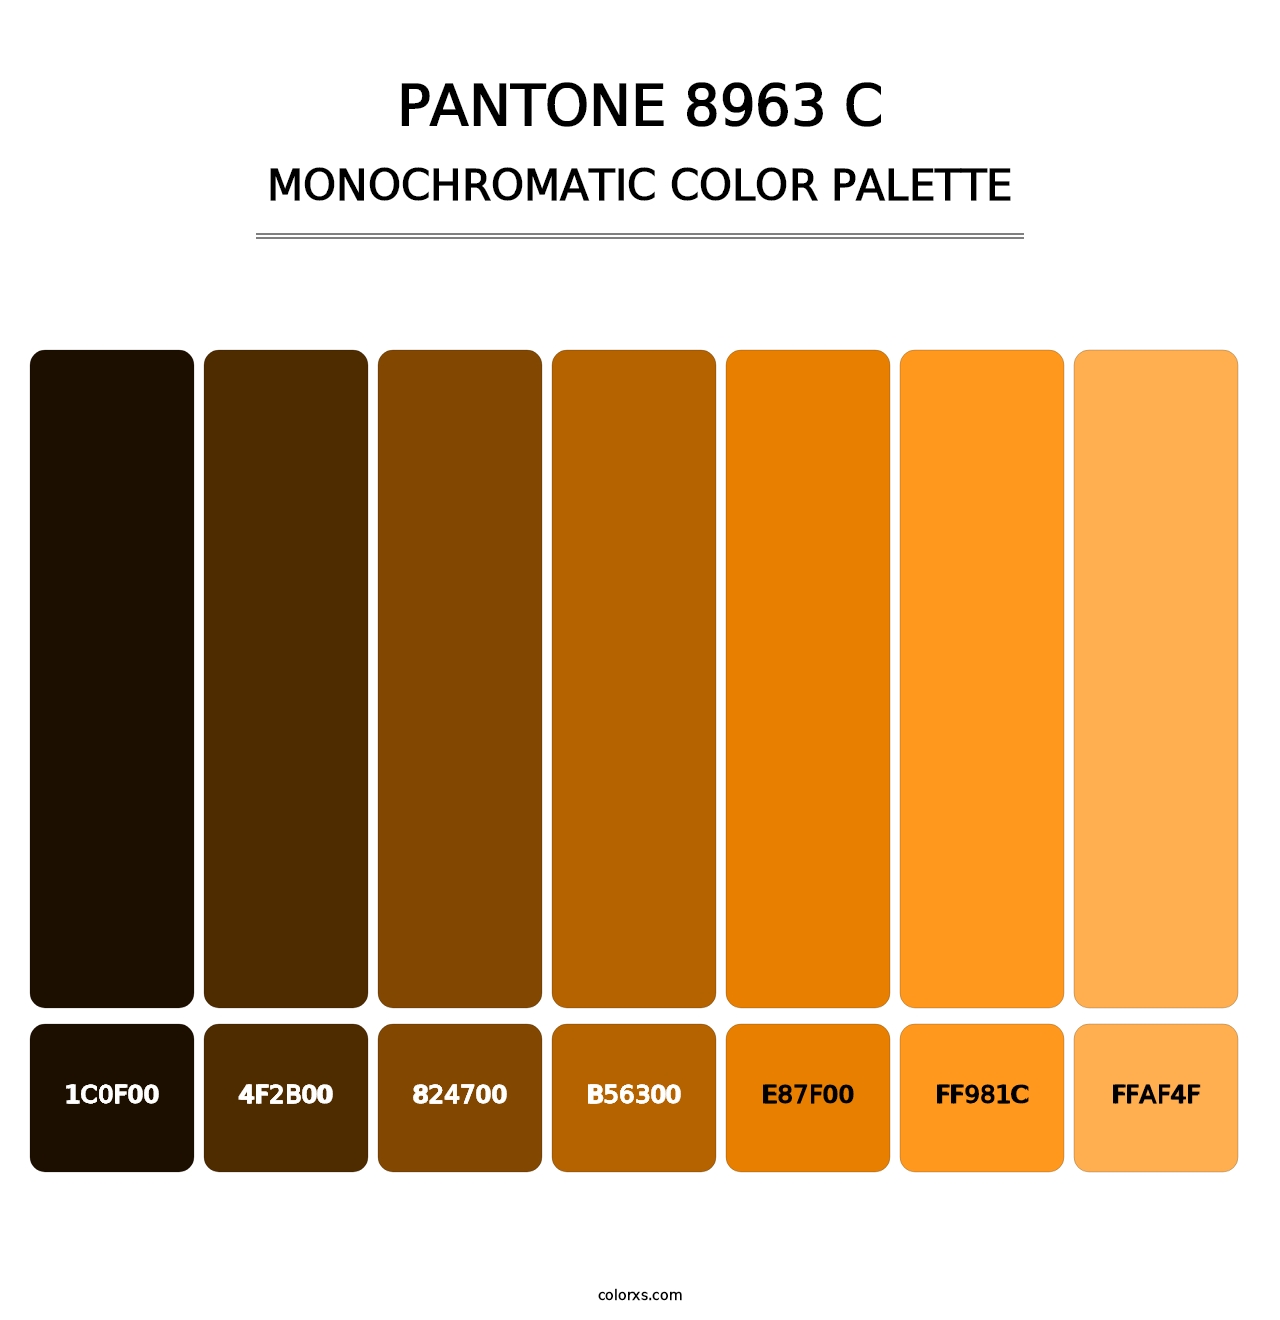 PANTONE 8963 C - Monochromatic Color Palette